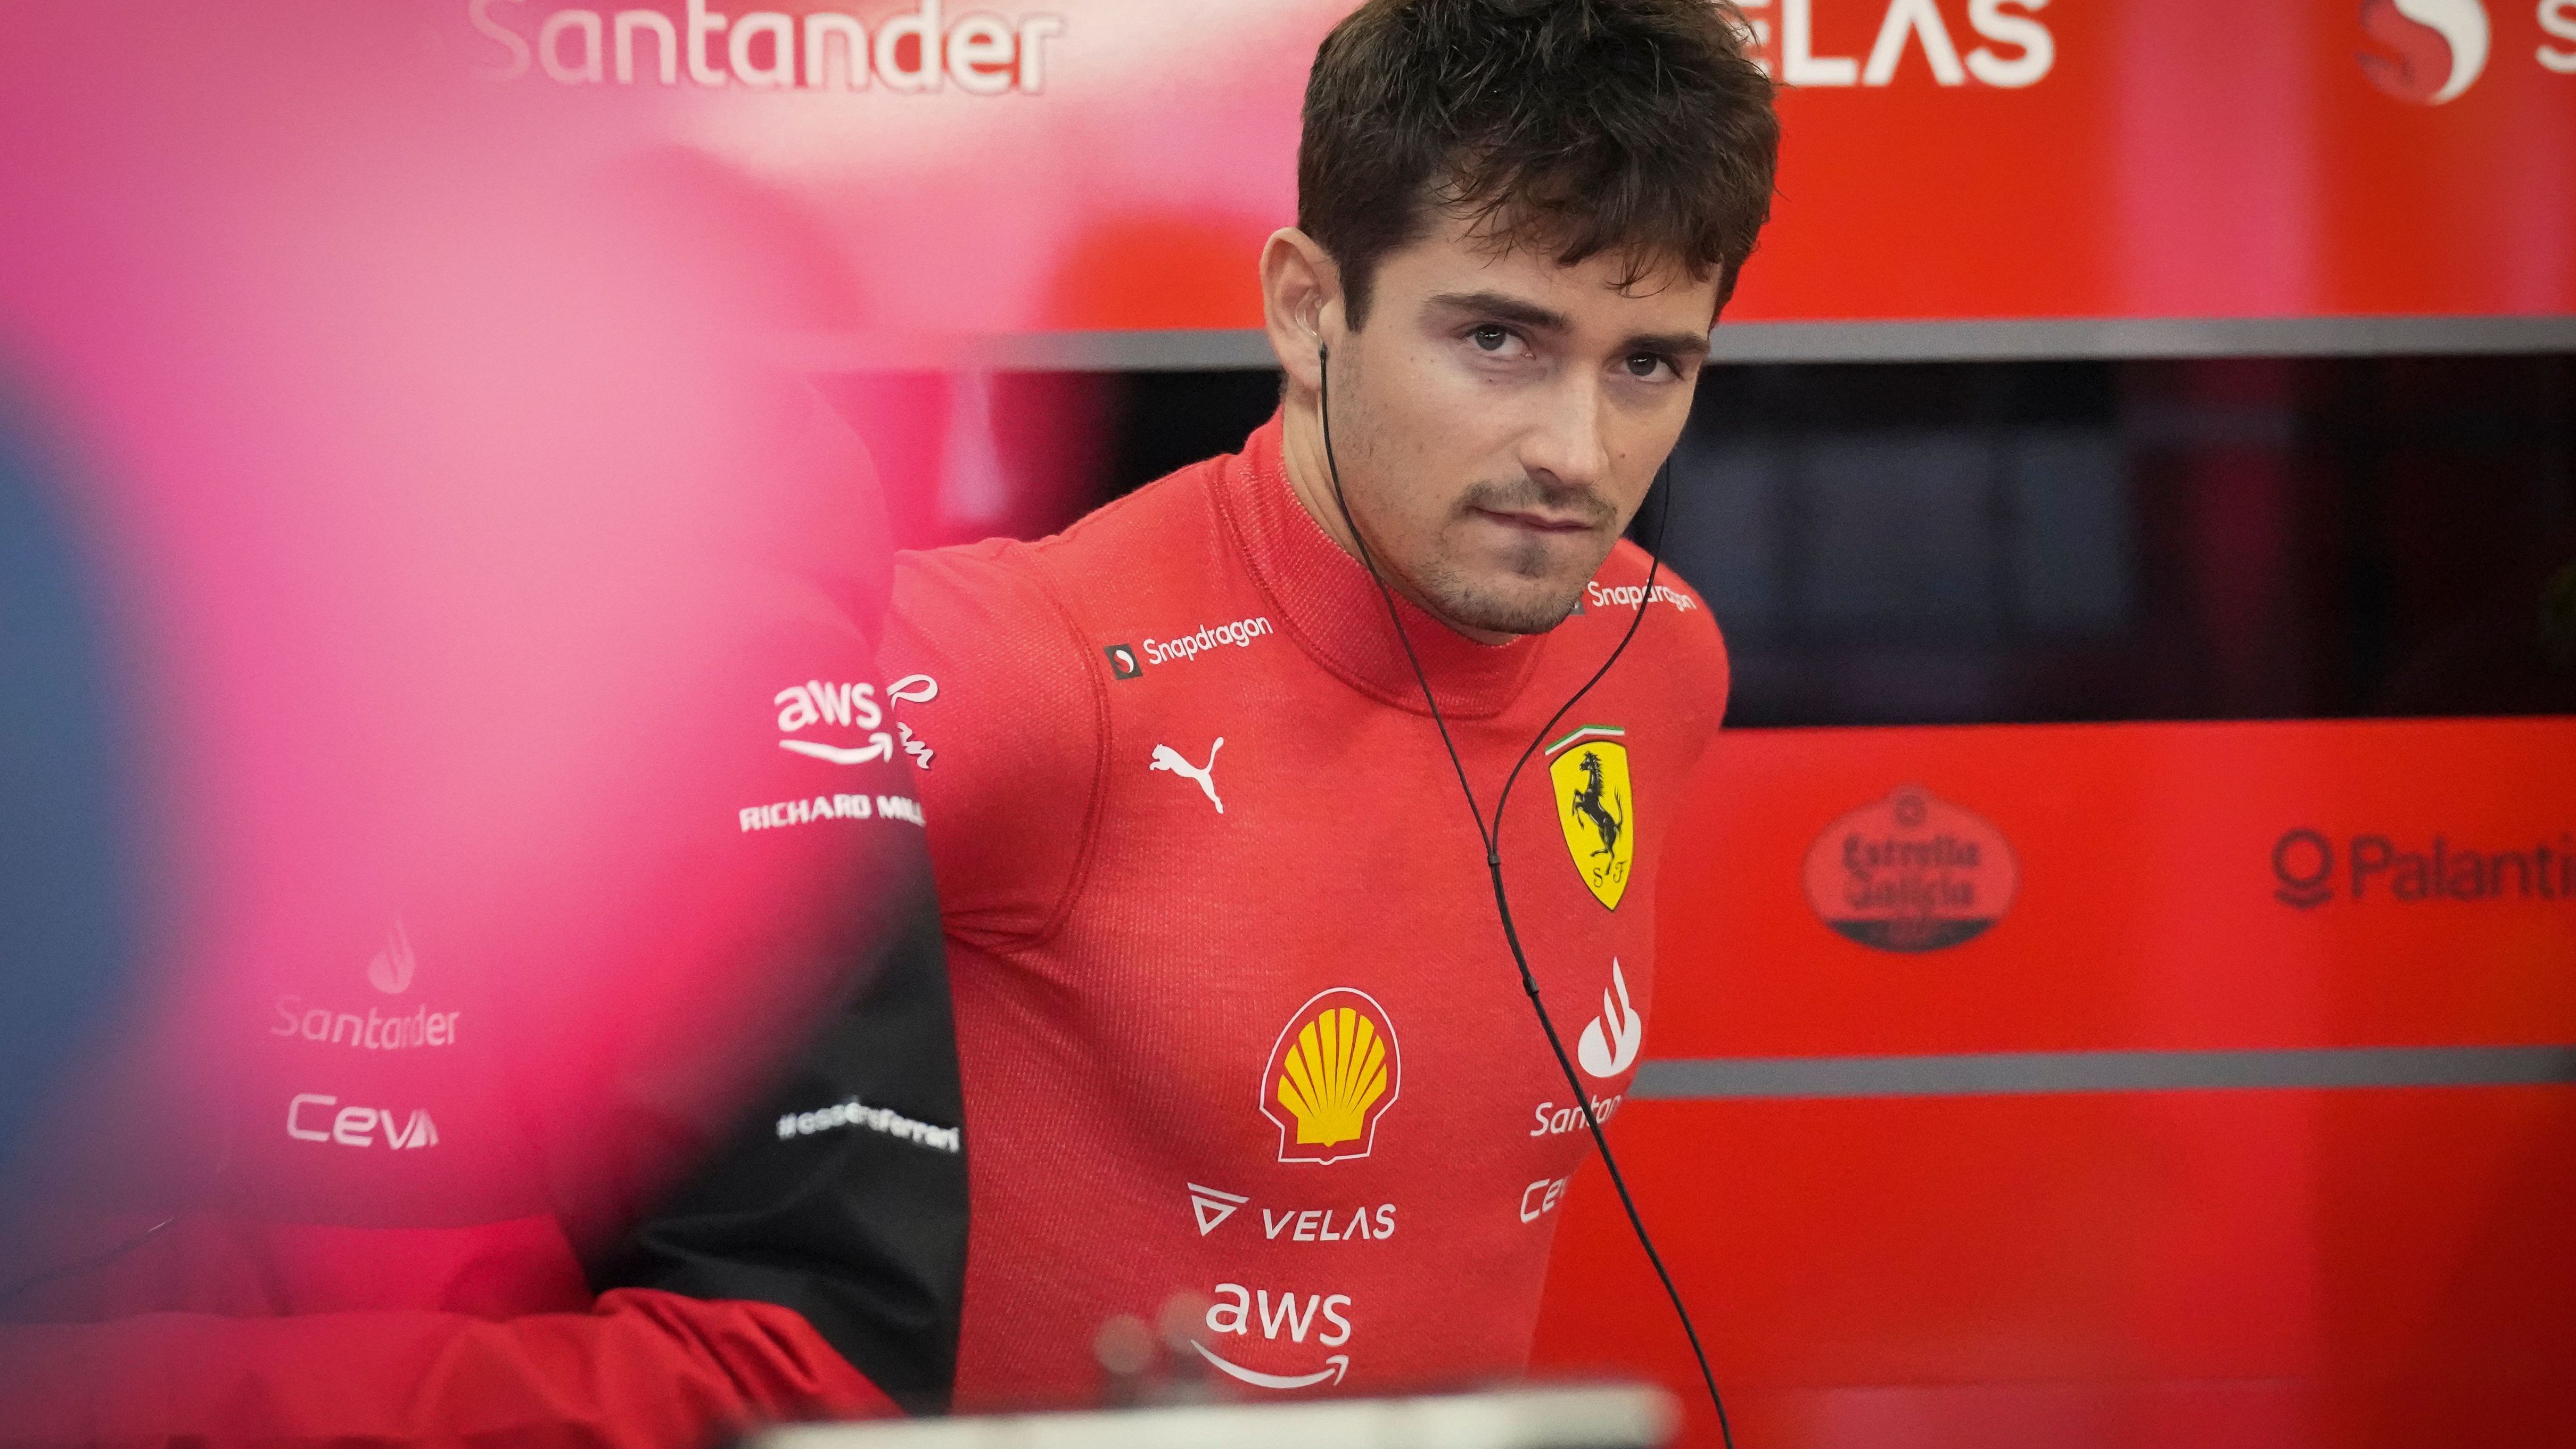 Großer Preis von Japan: Ferrari-Pilot Charles Leclerc aus Monaco bereitet sich auf das erste Freie Training vor.